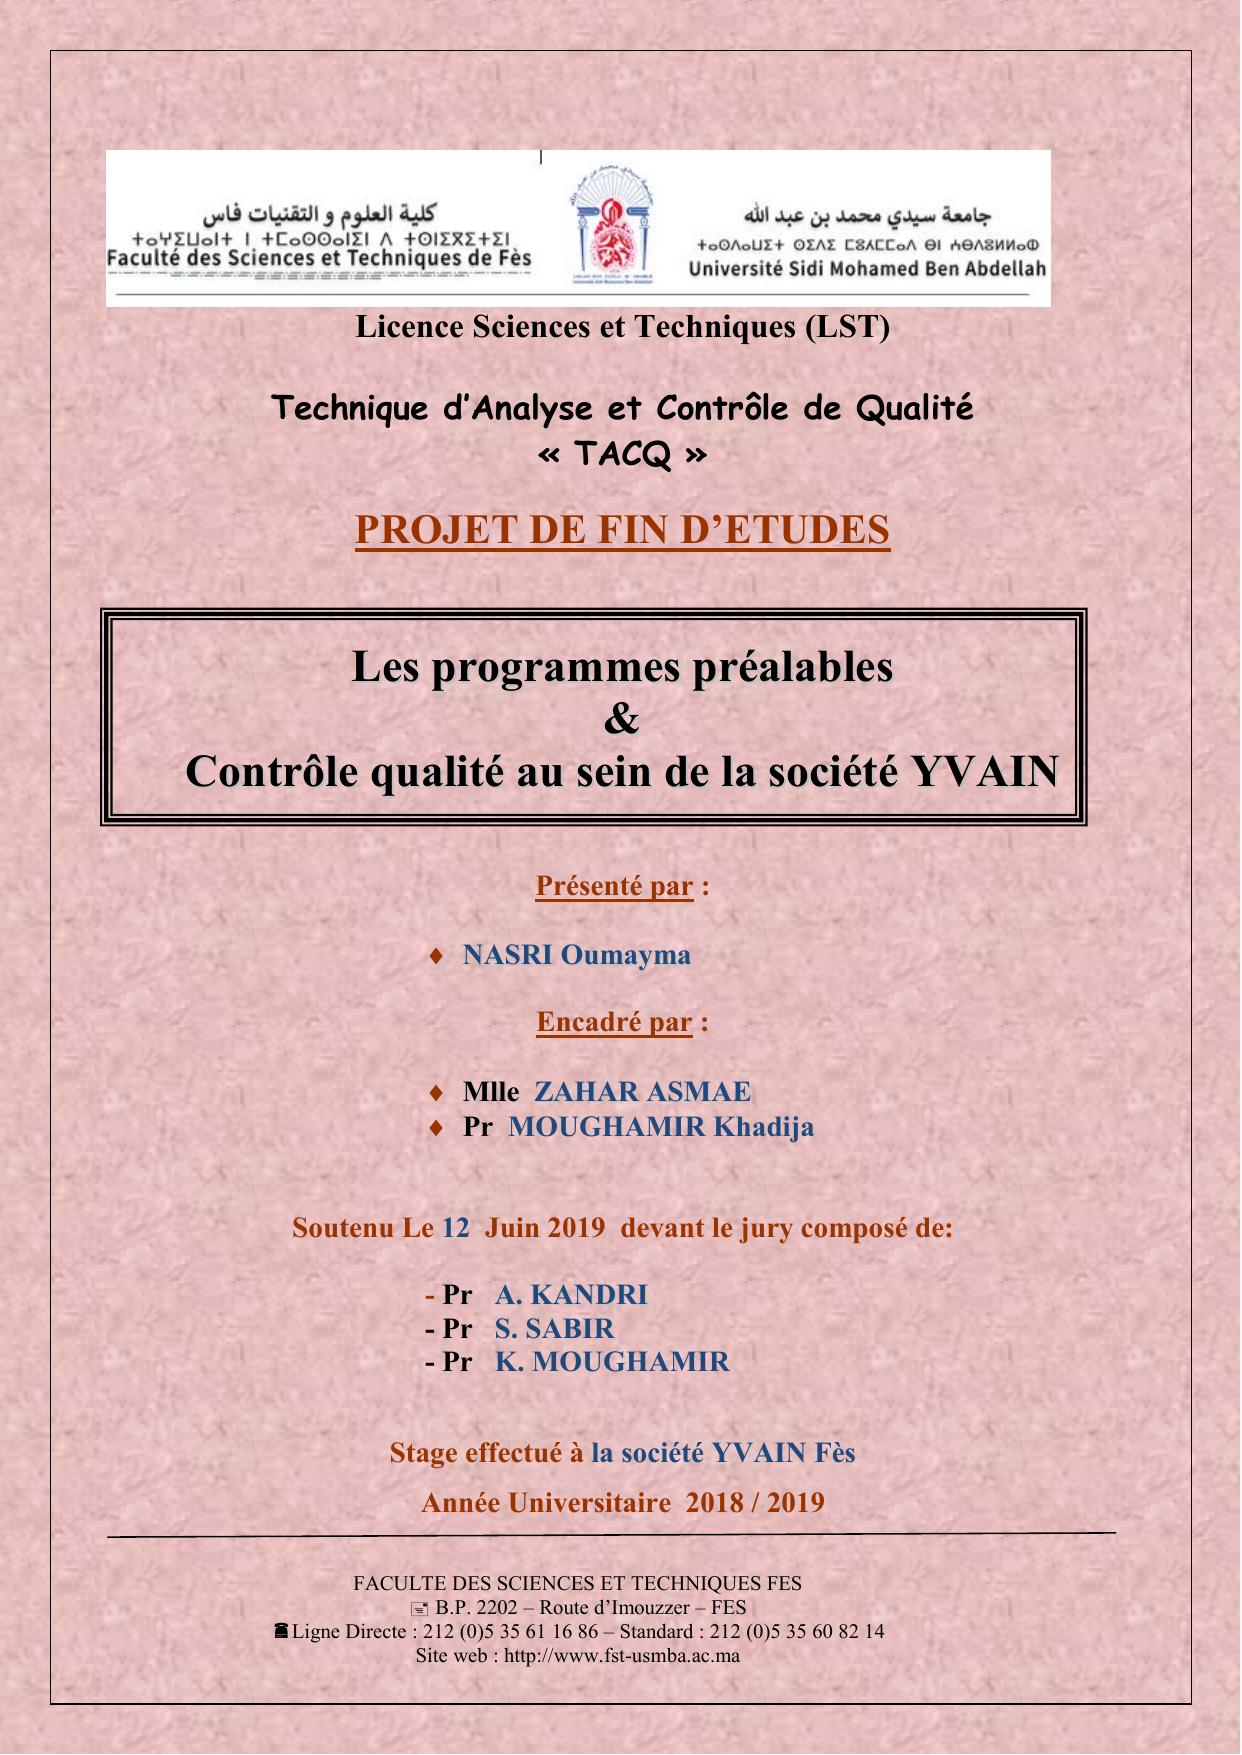 Les programmes préalables & Contrôle qualité au sein de la société YVAIN